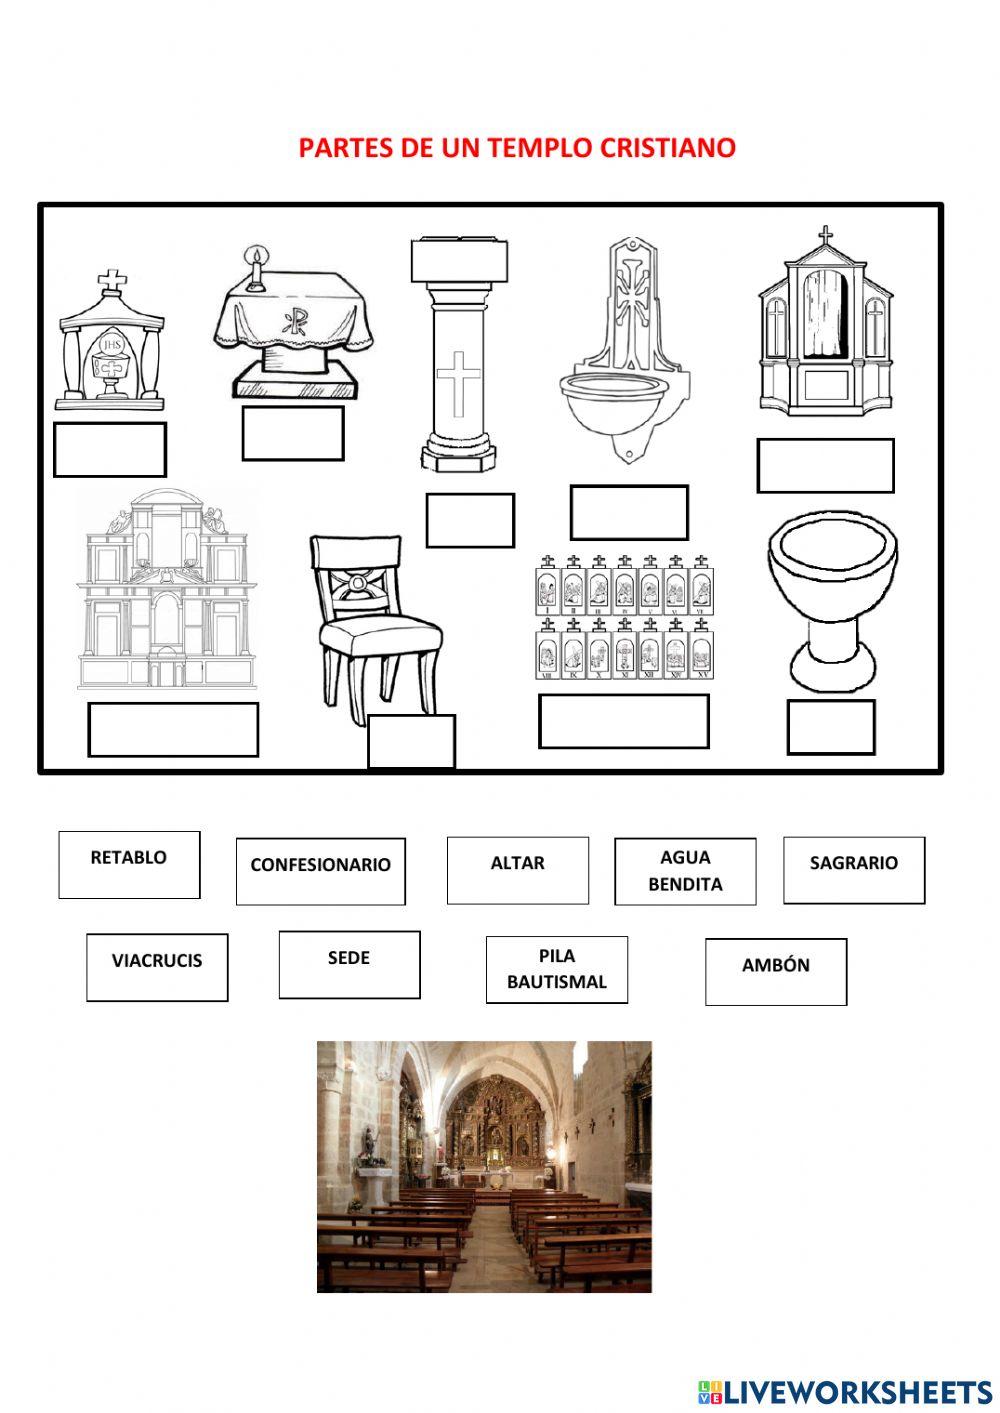 Partes de una iglesia cristiana interactive worksheet | Live Worksheets